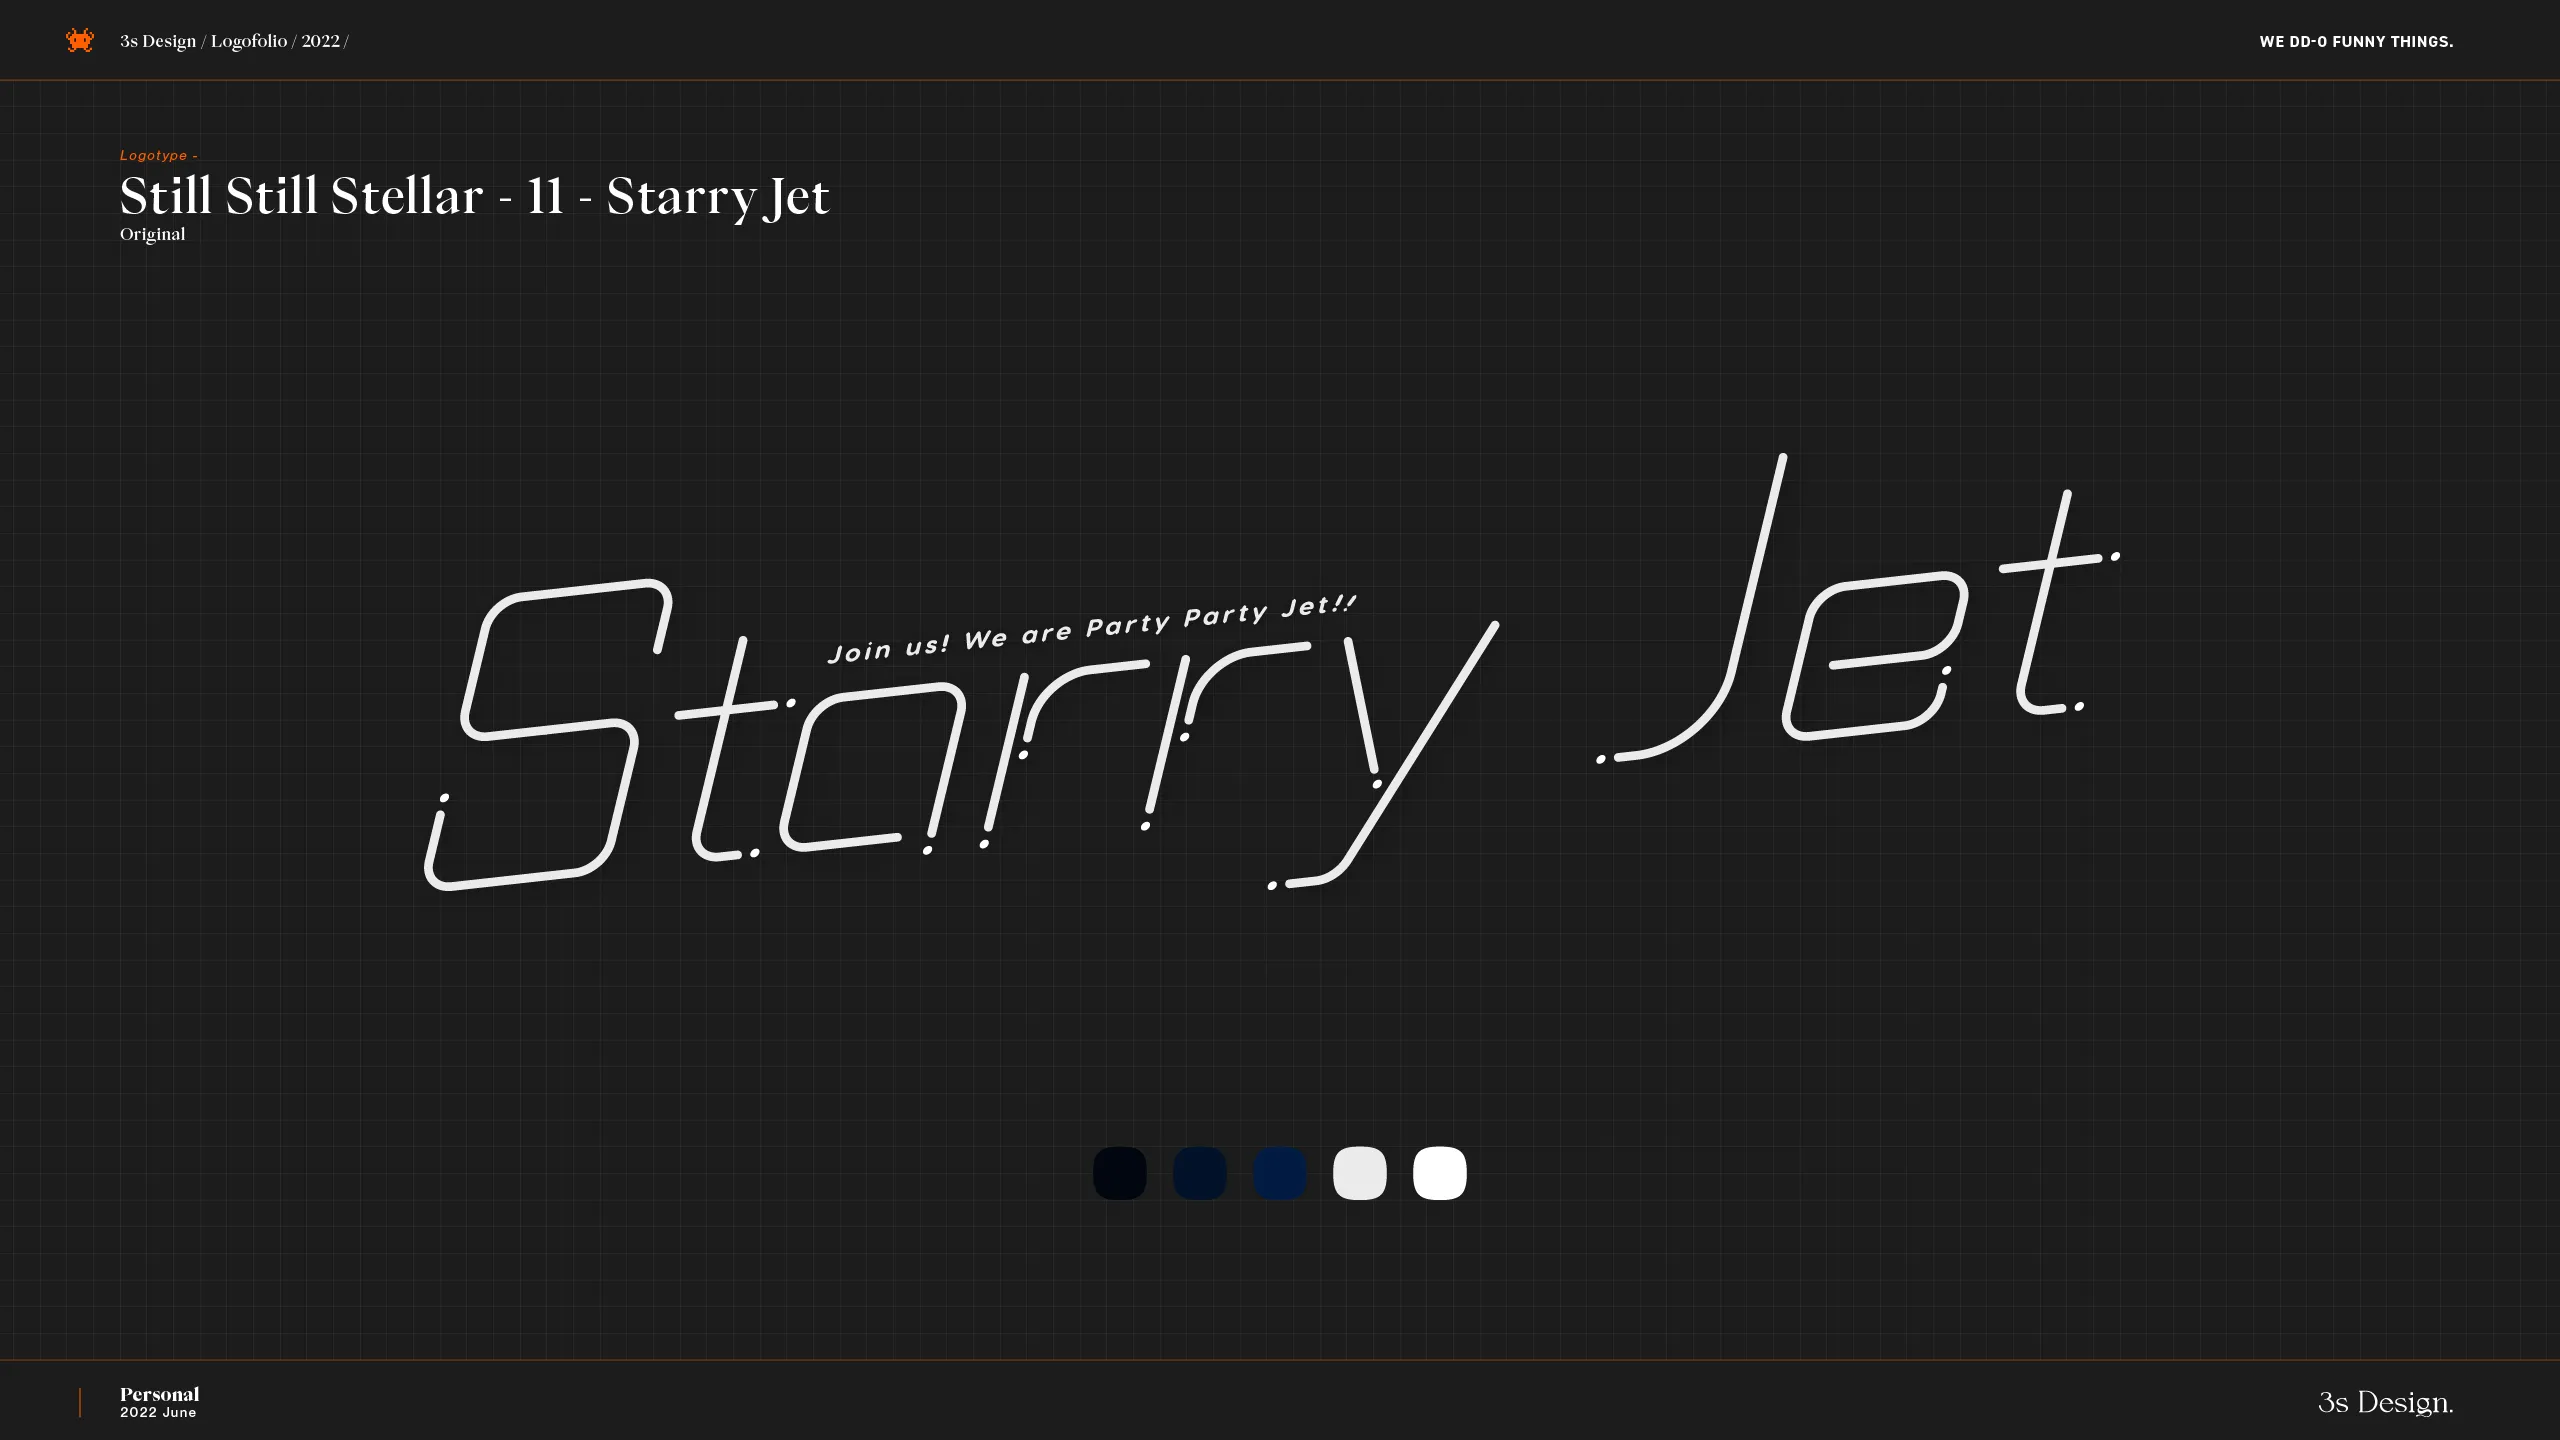 3s-Design-Logofolio-2022-v1.3.1_SSS-11-Starry-Jet